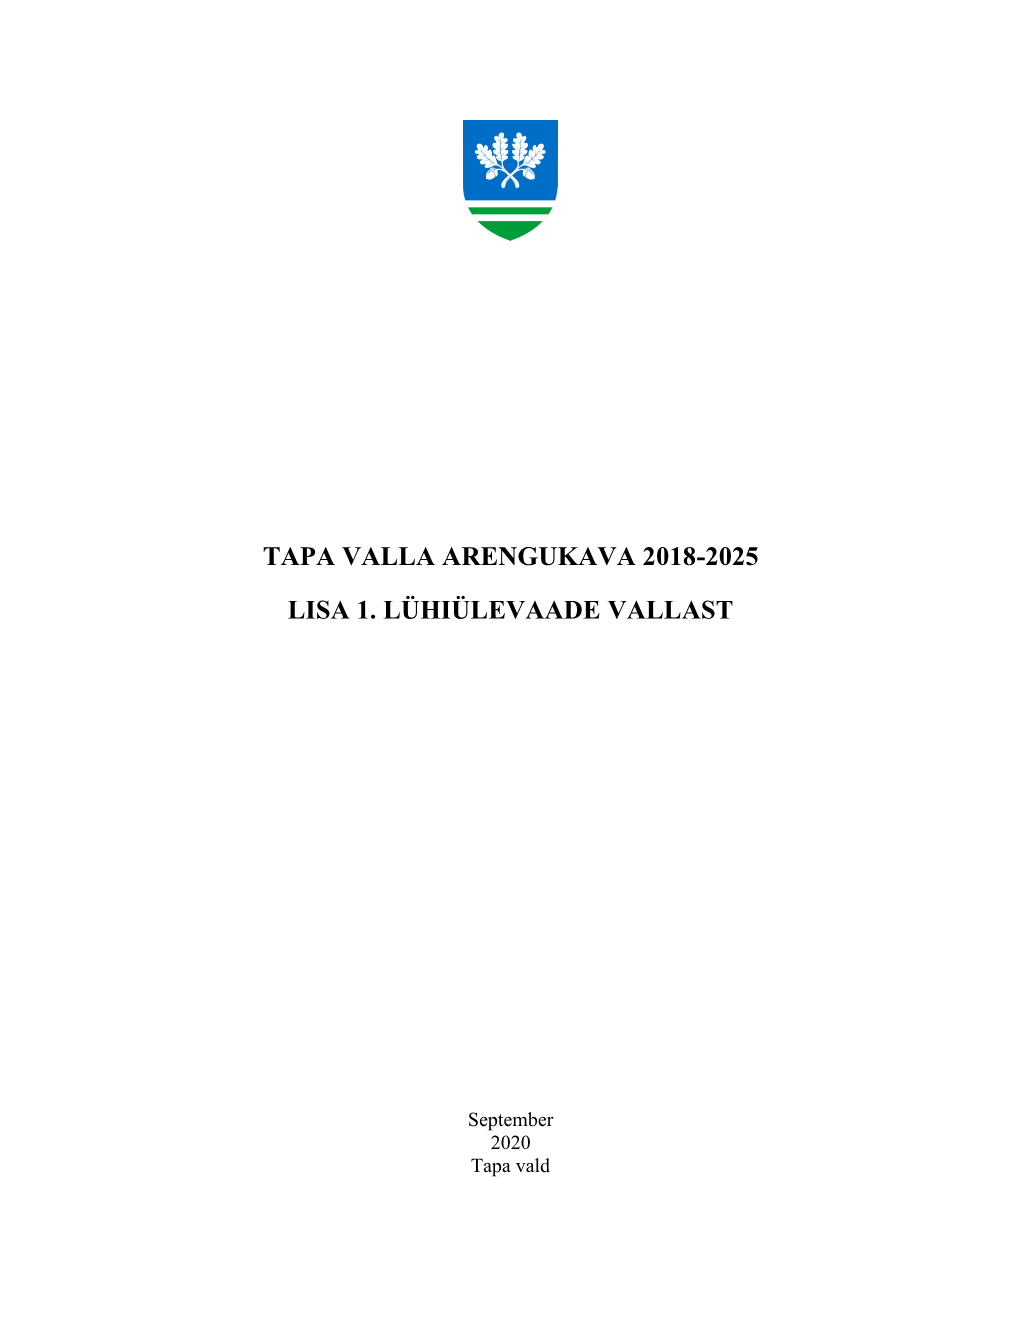 Tapa Valla Arengukava 2018-2025 Lisa 1